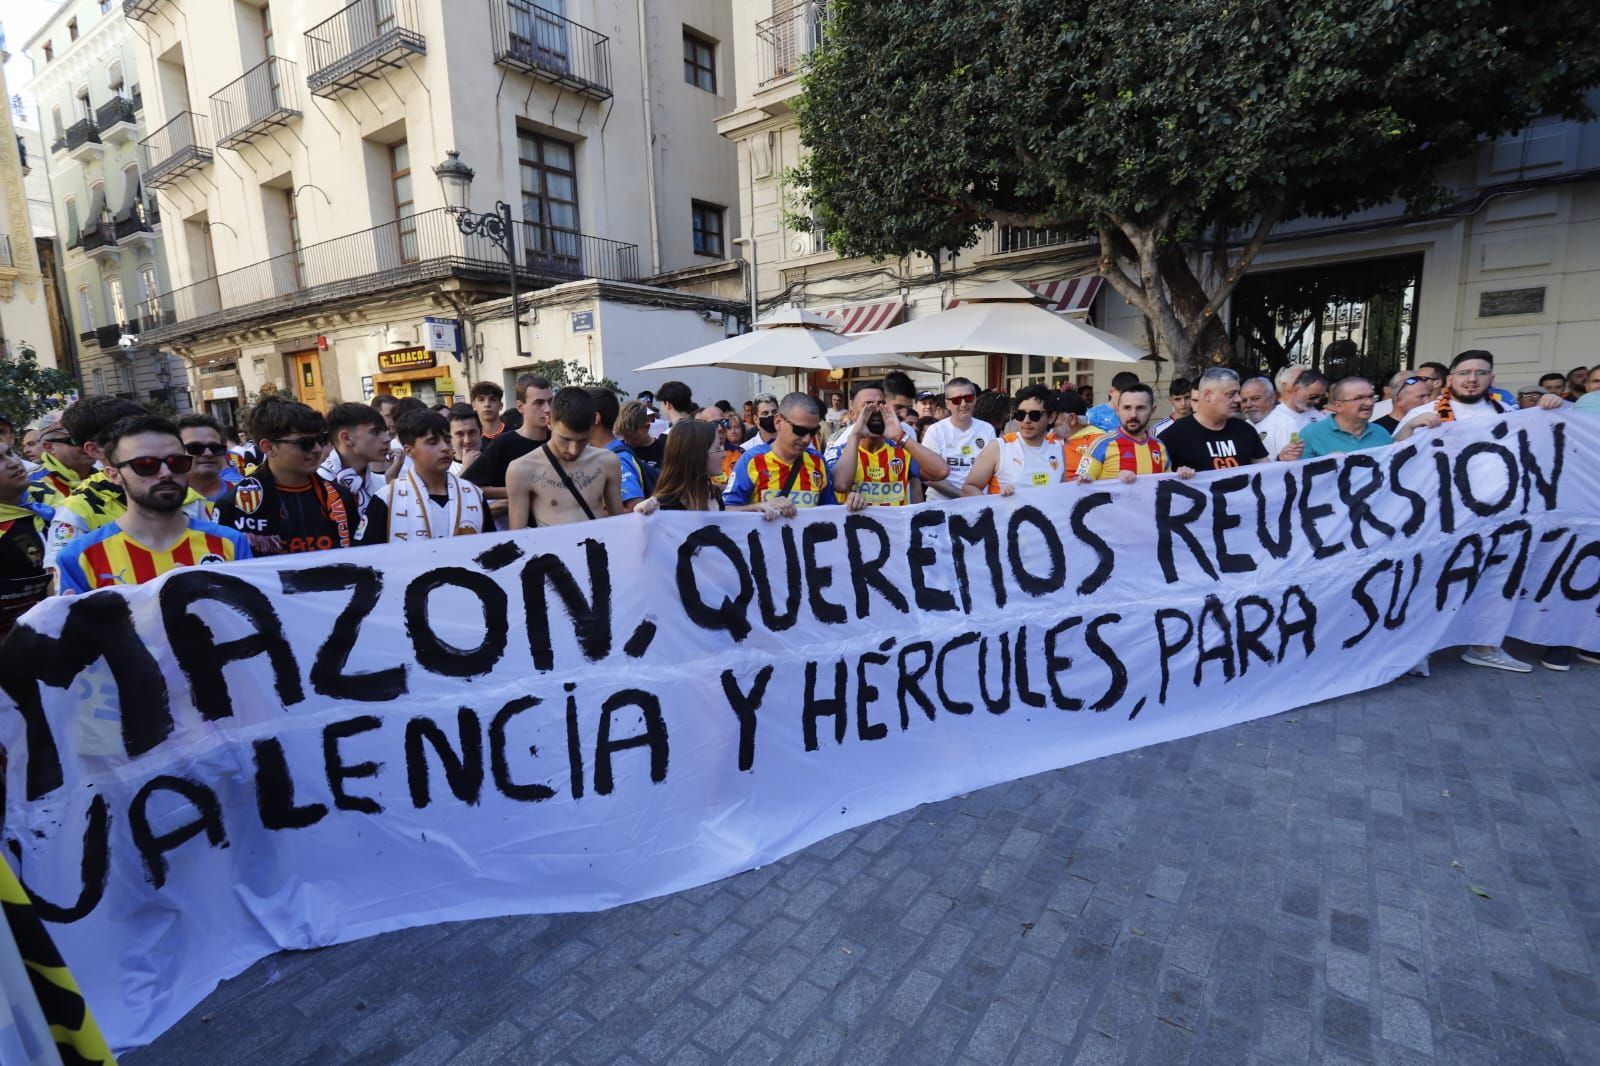 El valencianismo se manifiesta en la plaza de Manises contra la gestión de Lim